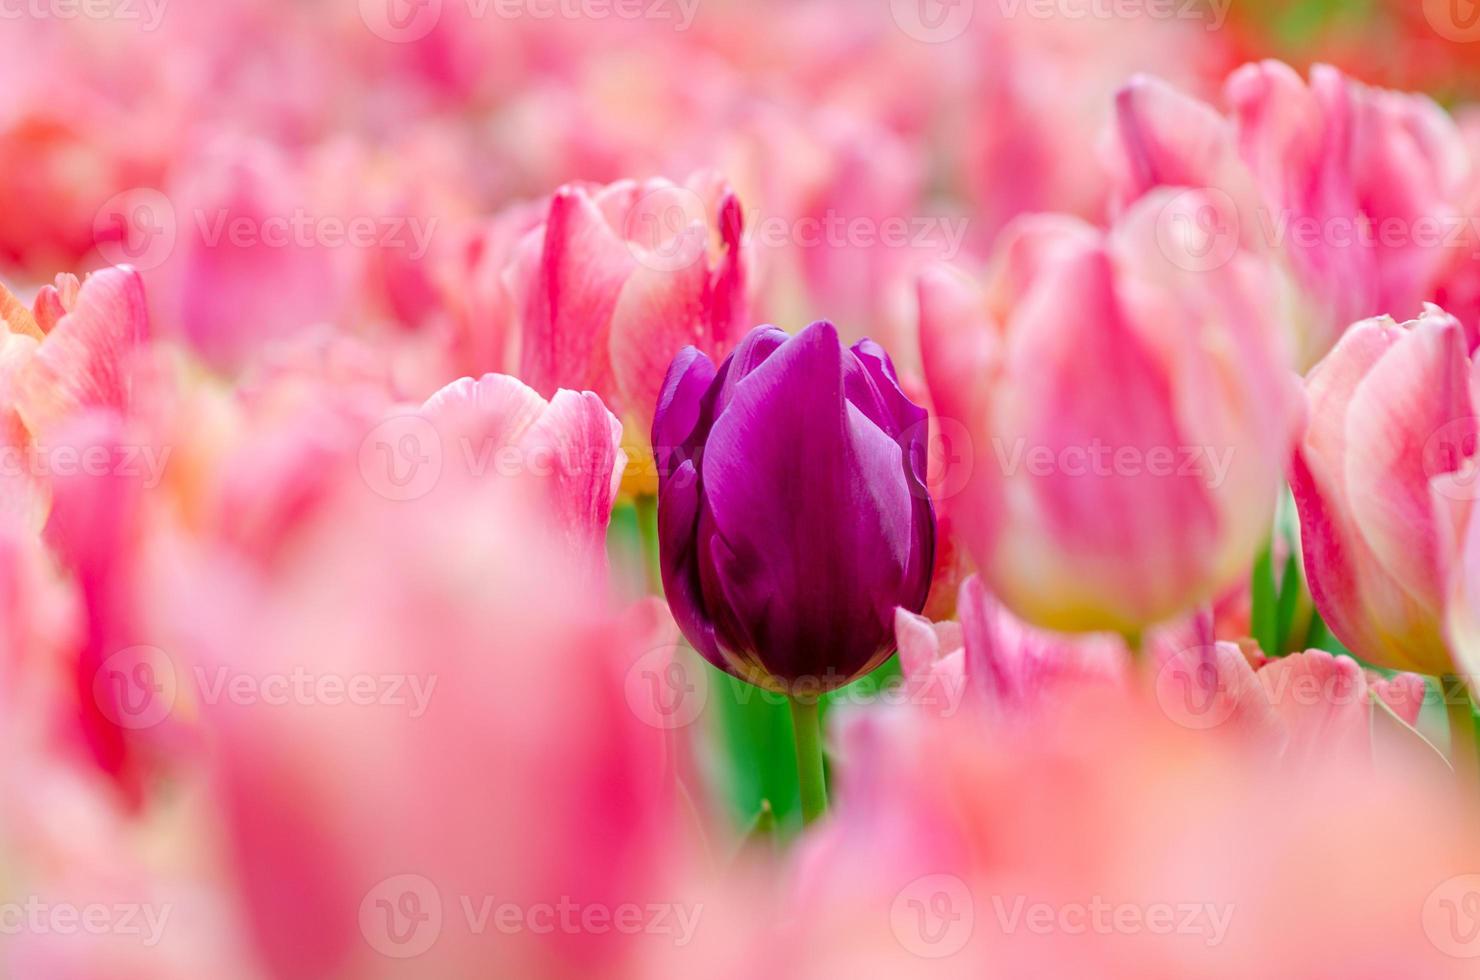 los campos de tulipanes morados en medio de tulipanes rosados están floreciendo densamente foto